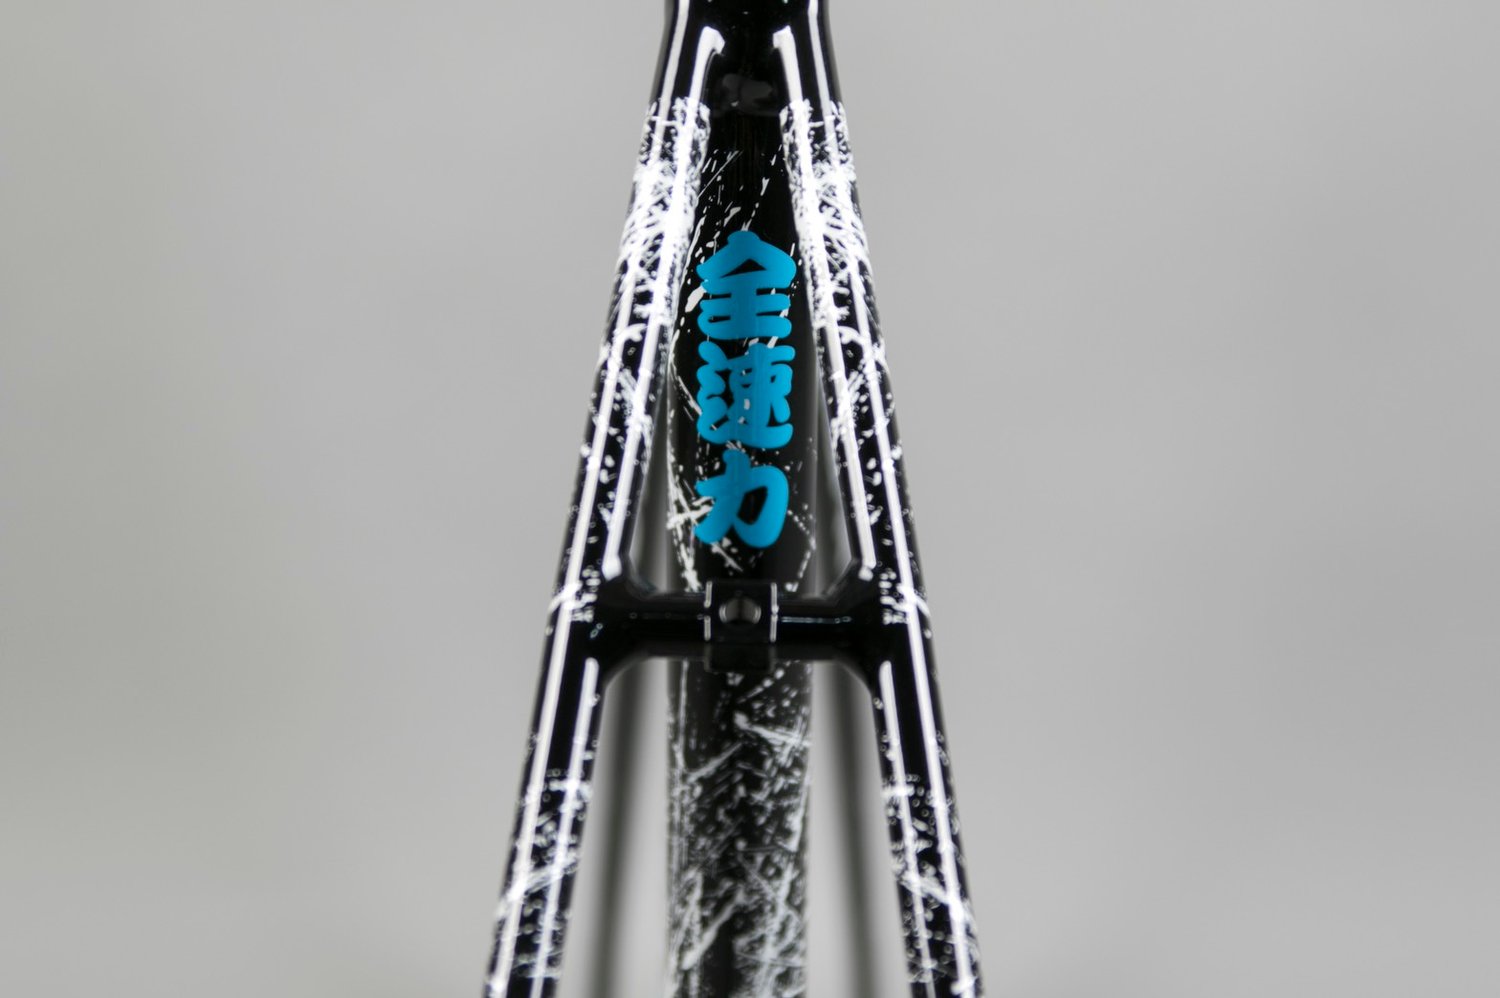 Image of ENGINE11 Sprinter Black/Blue frameset